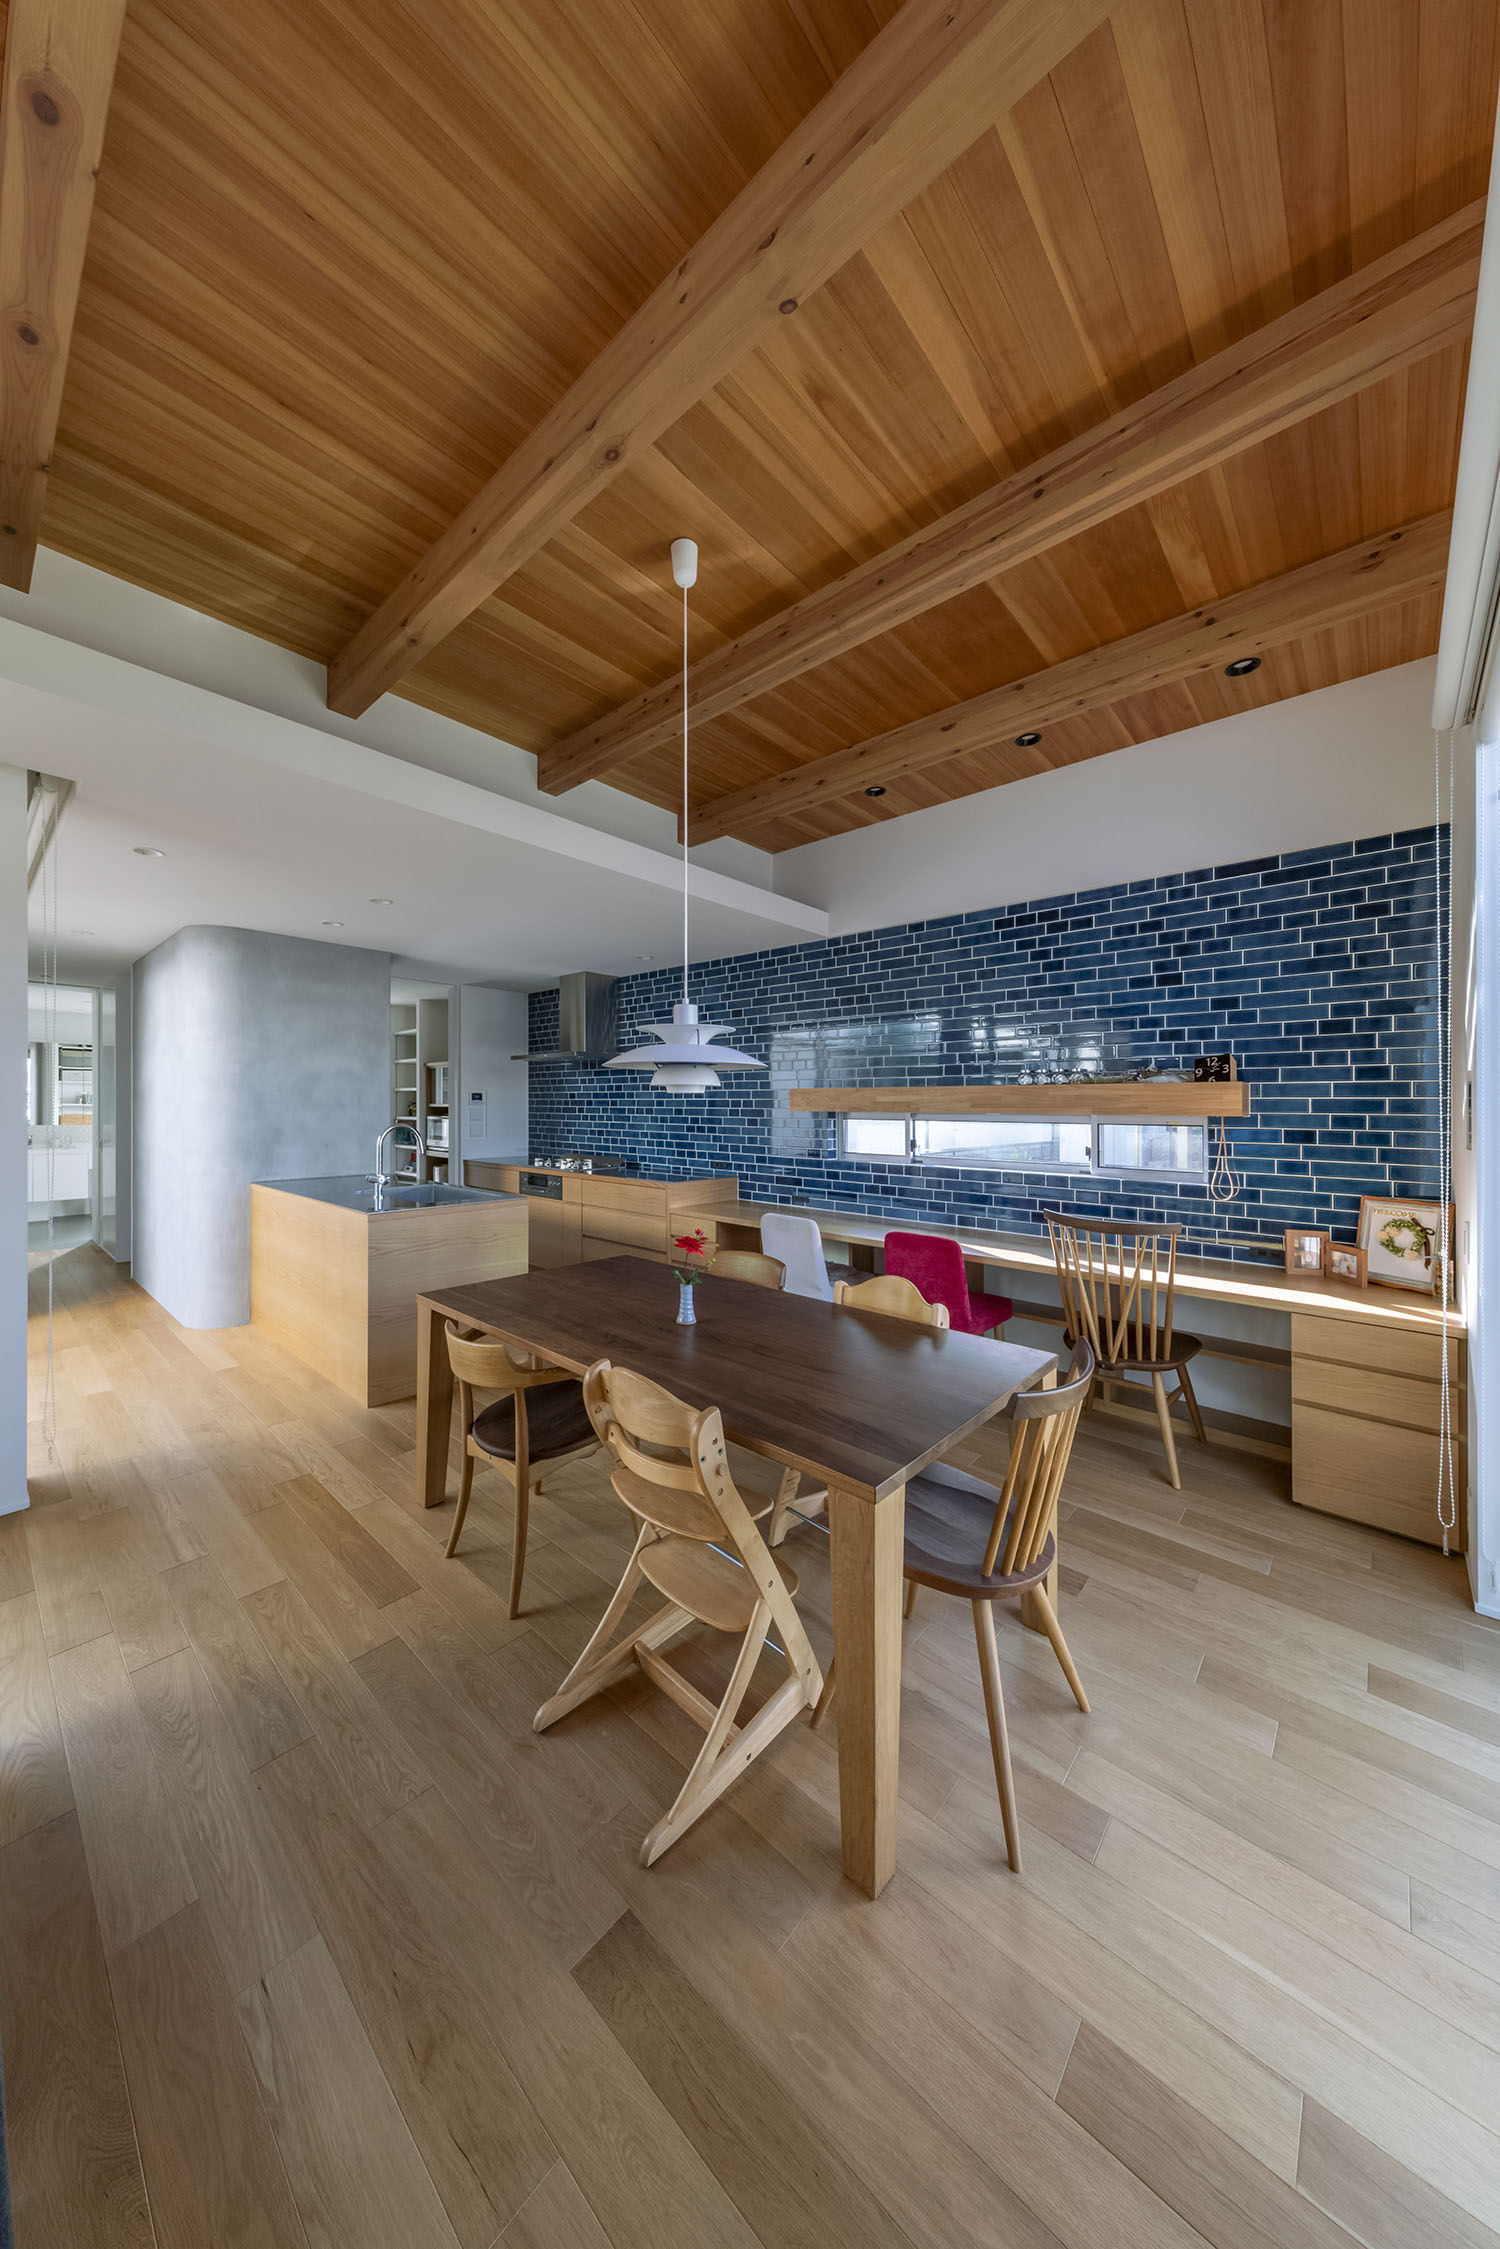 木のインテリアを中心とした梁見せ天井のLDK・デザイン住宅